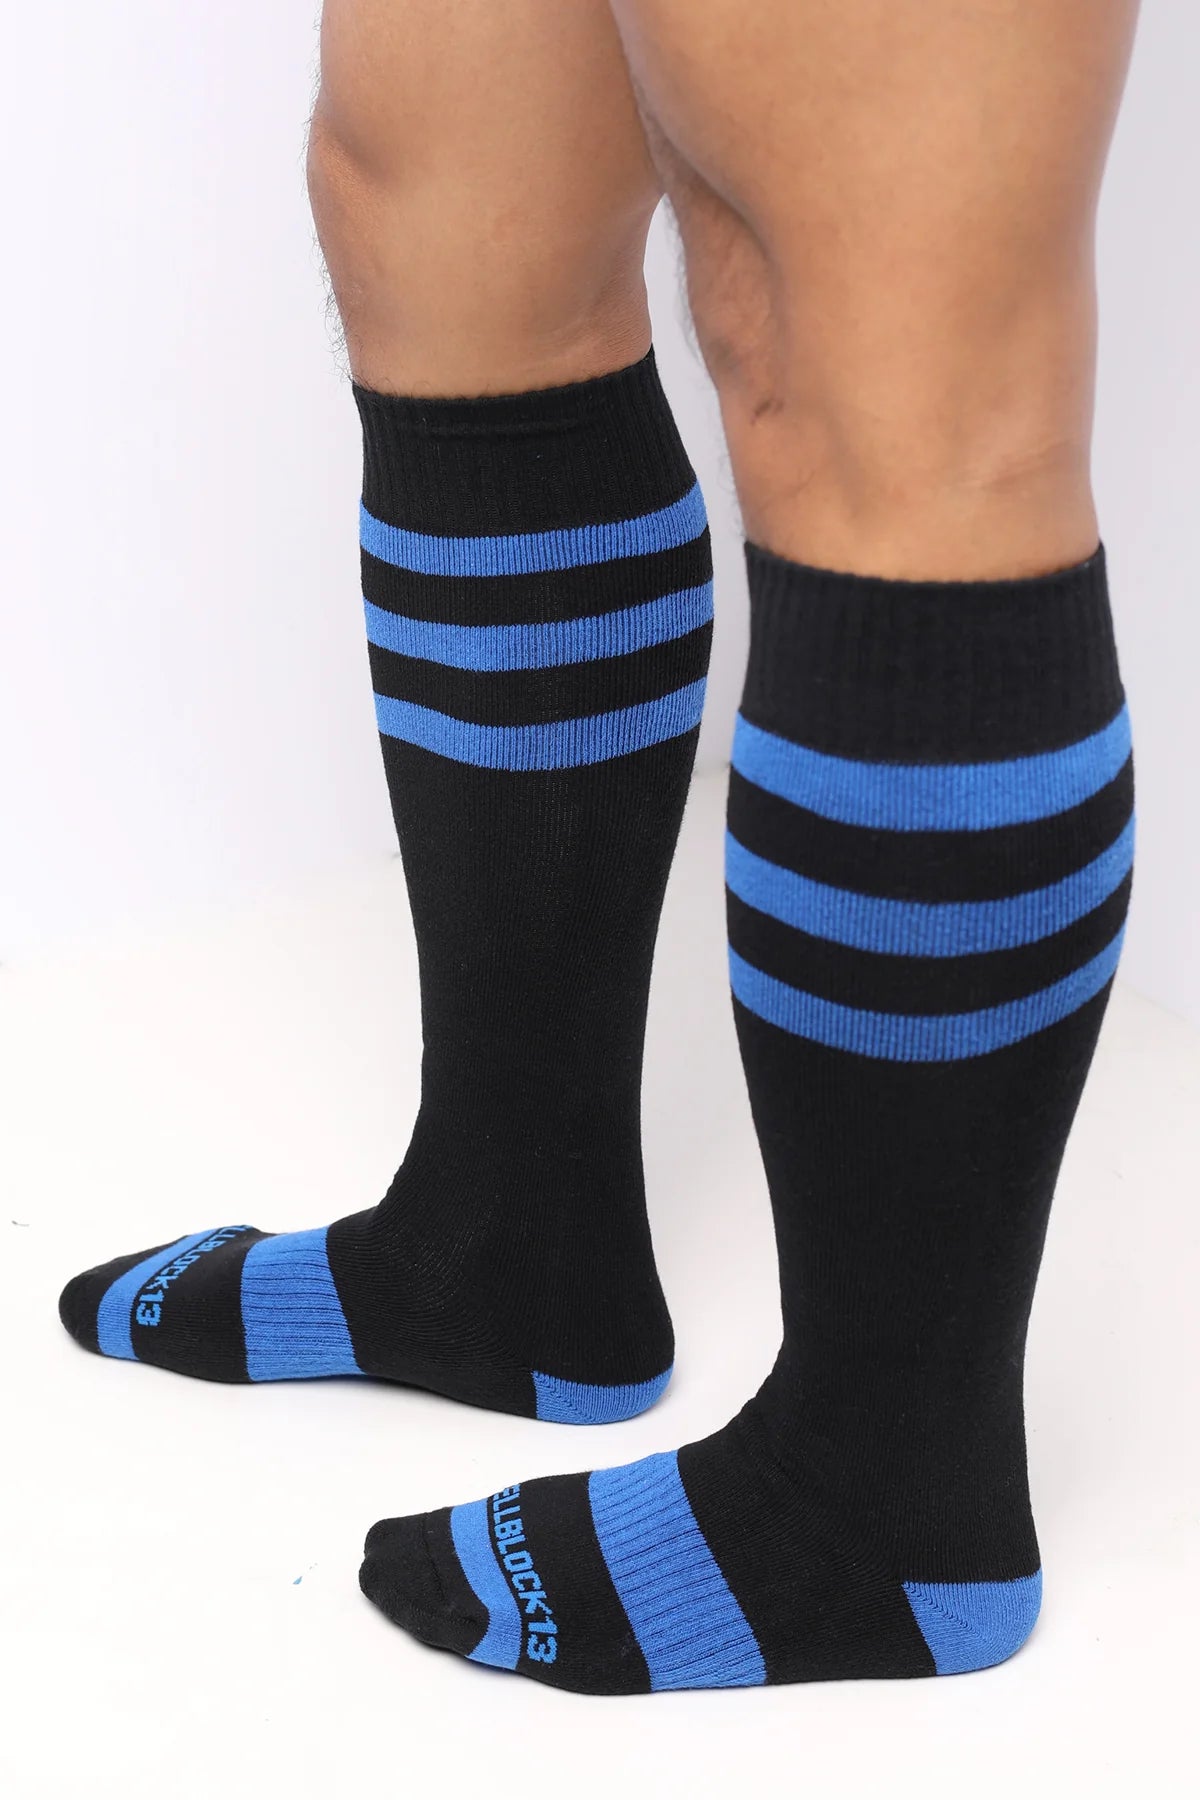 Cellblock 13 Linebacker knee-high socks black/blue